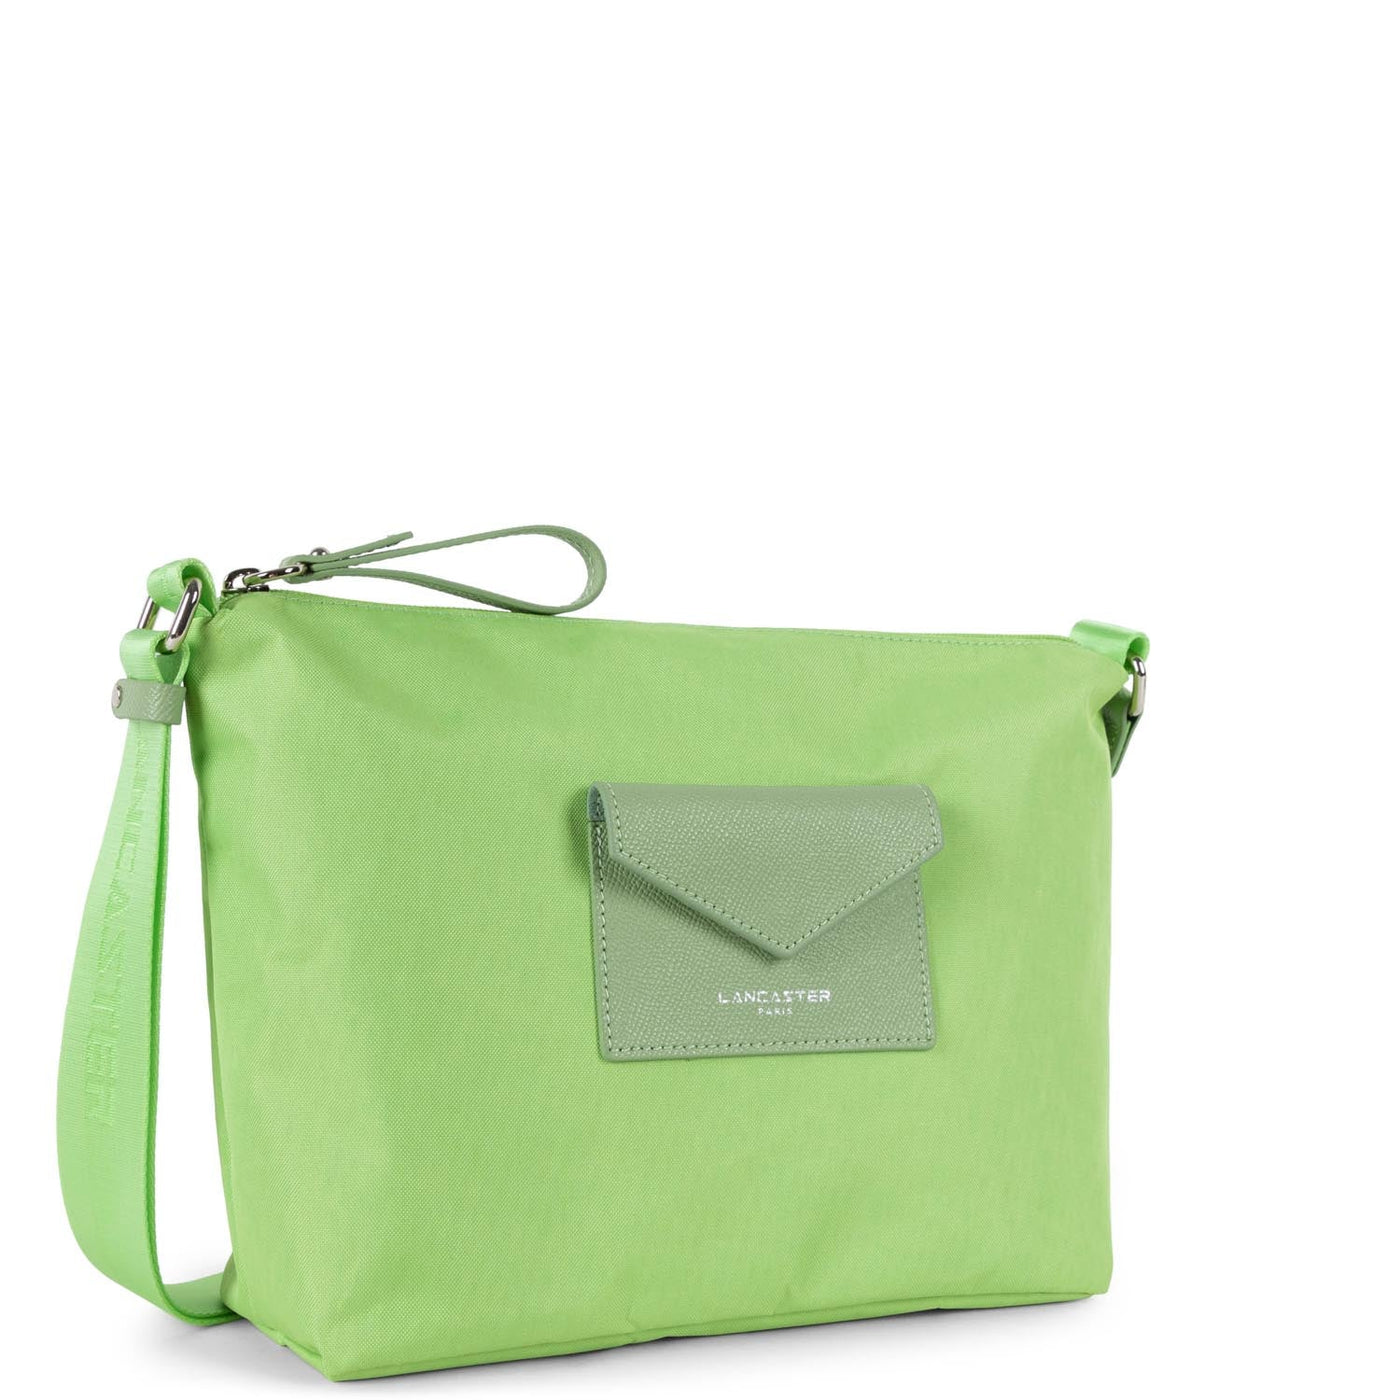 shoulder bag - smart kba #couleur_jade